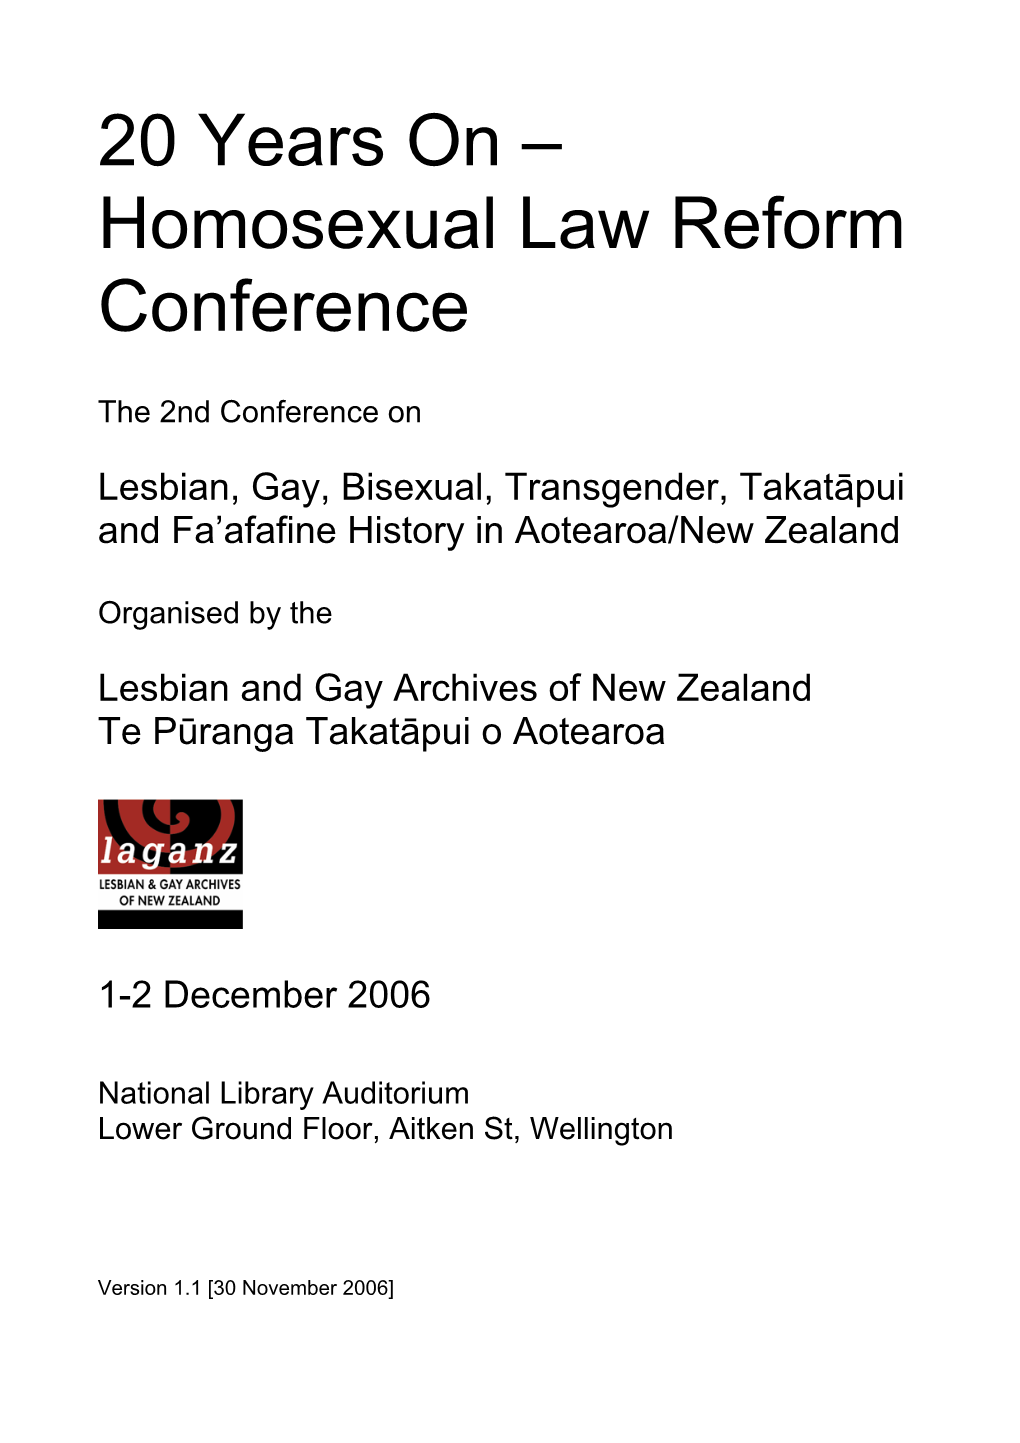 Homosexual Law Reform Conference